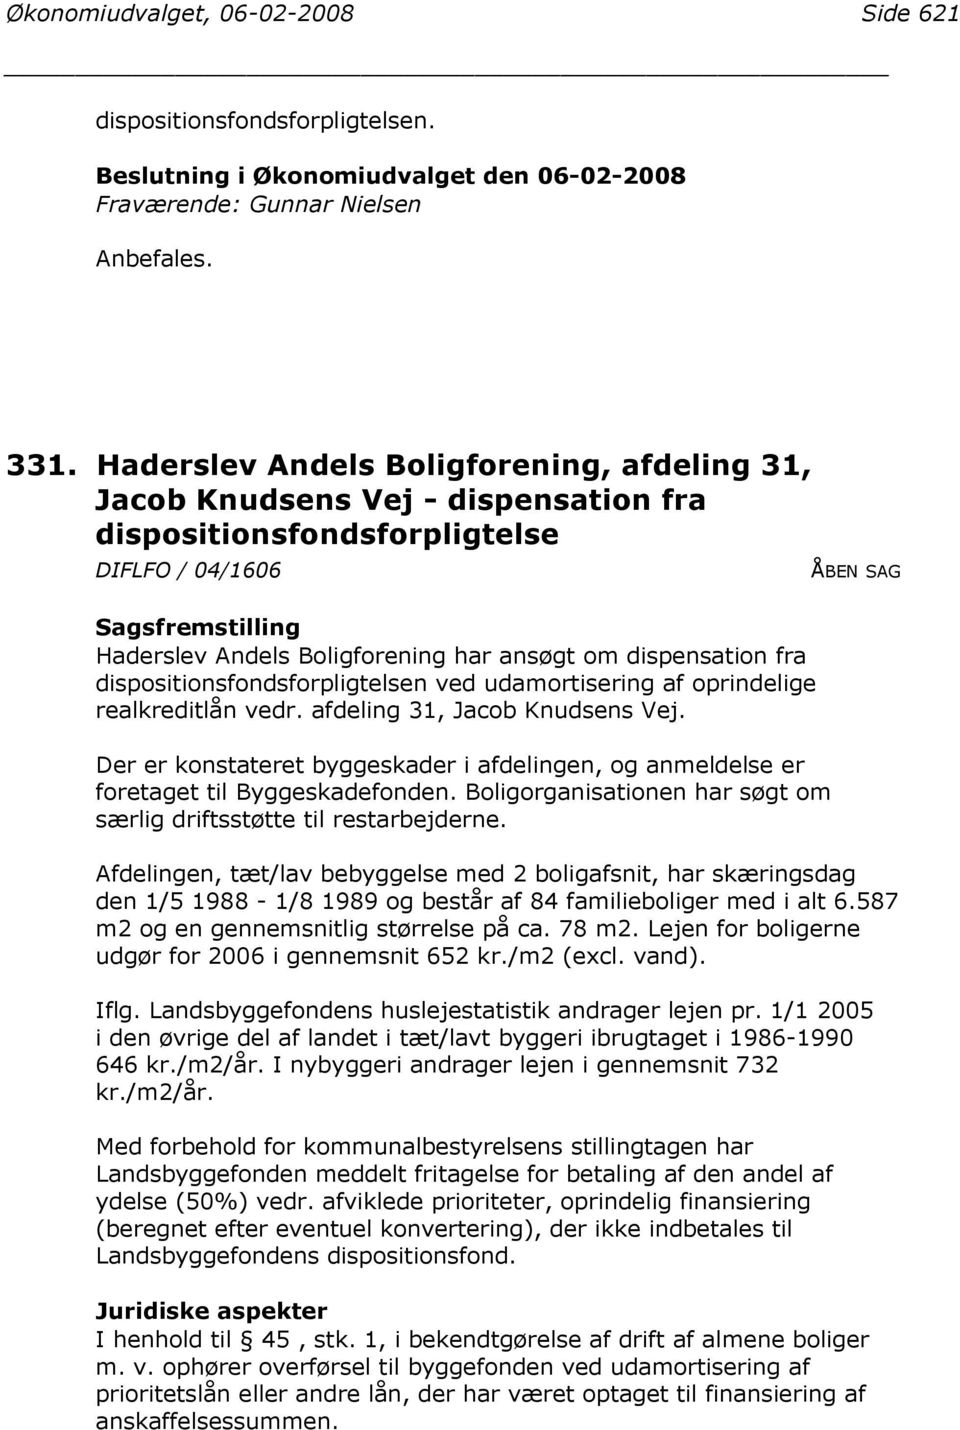 dispositionsfondsforpligtelsen ved udamortisering af oprindelige realkreditlån vedr. afdeling 31, Jacob Knudsens Vej.